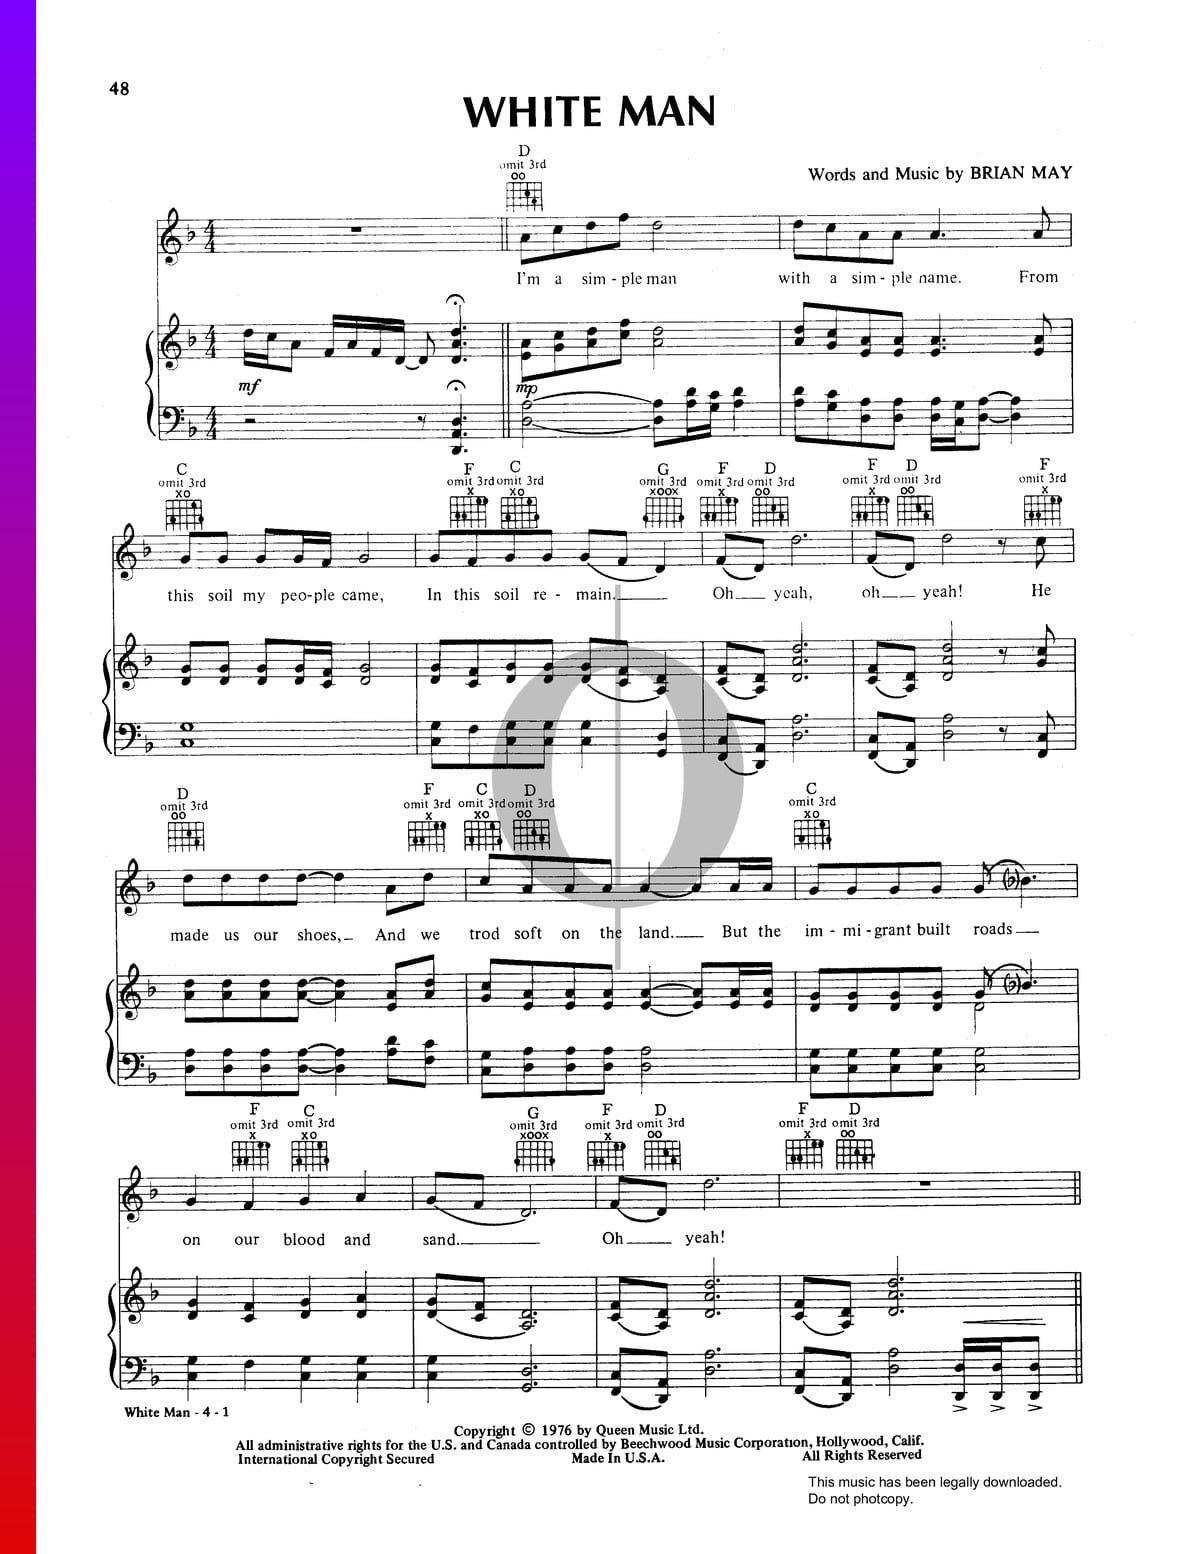 White Man Partitura (Piano, Voz, Guitarra) - Descarga de PDF y